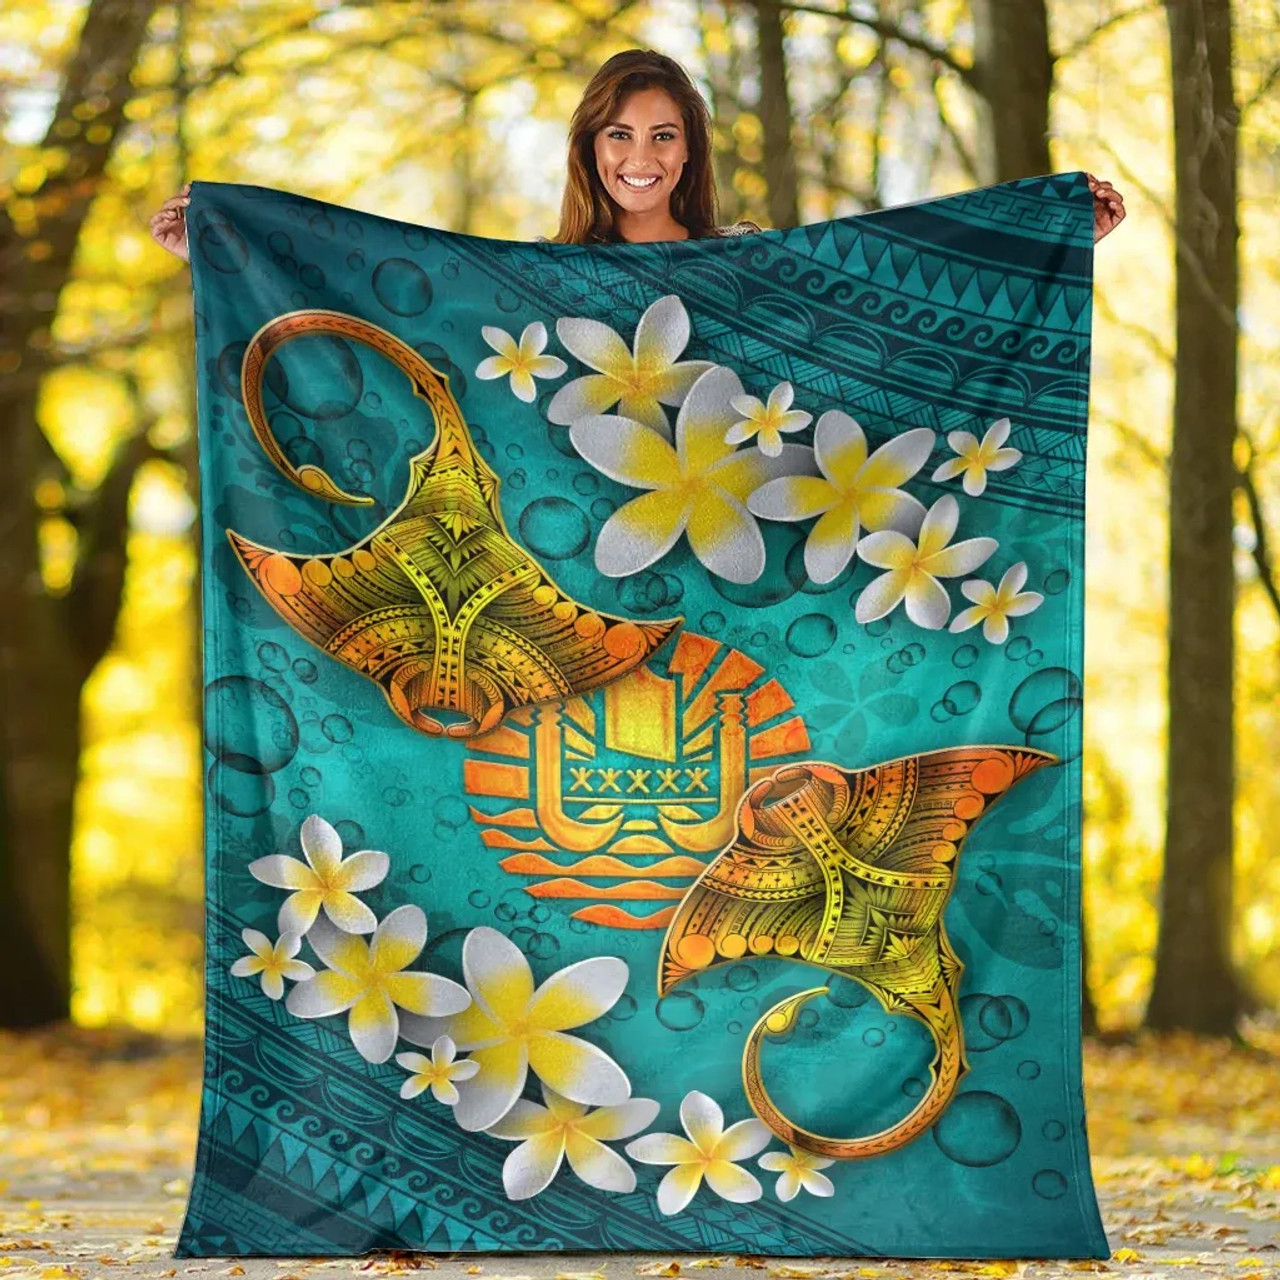 Tahiti Polynesian Blanket - Manta Ray Ocean 5